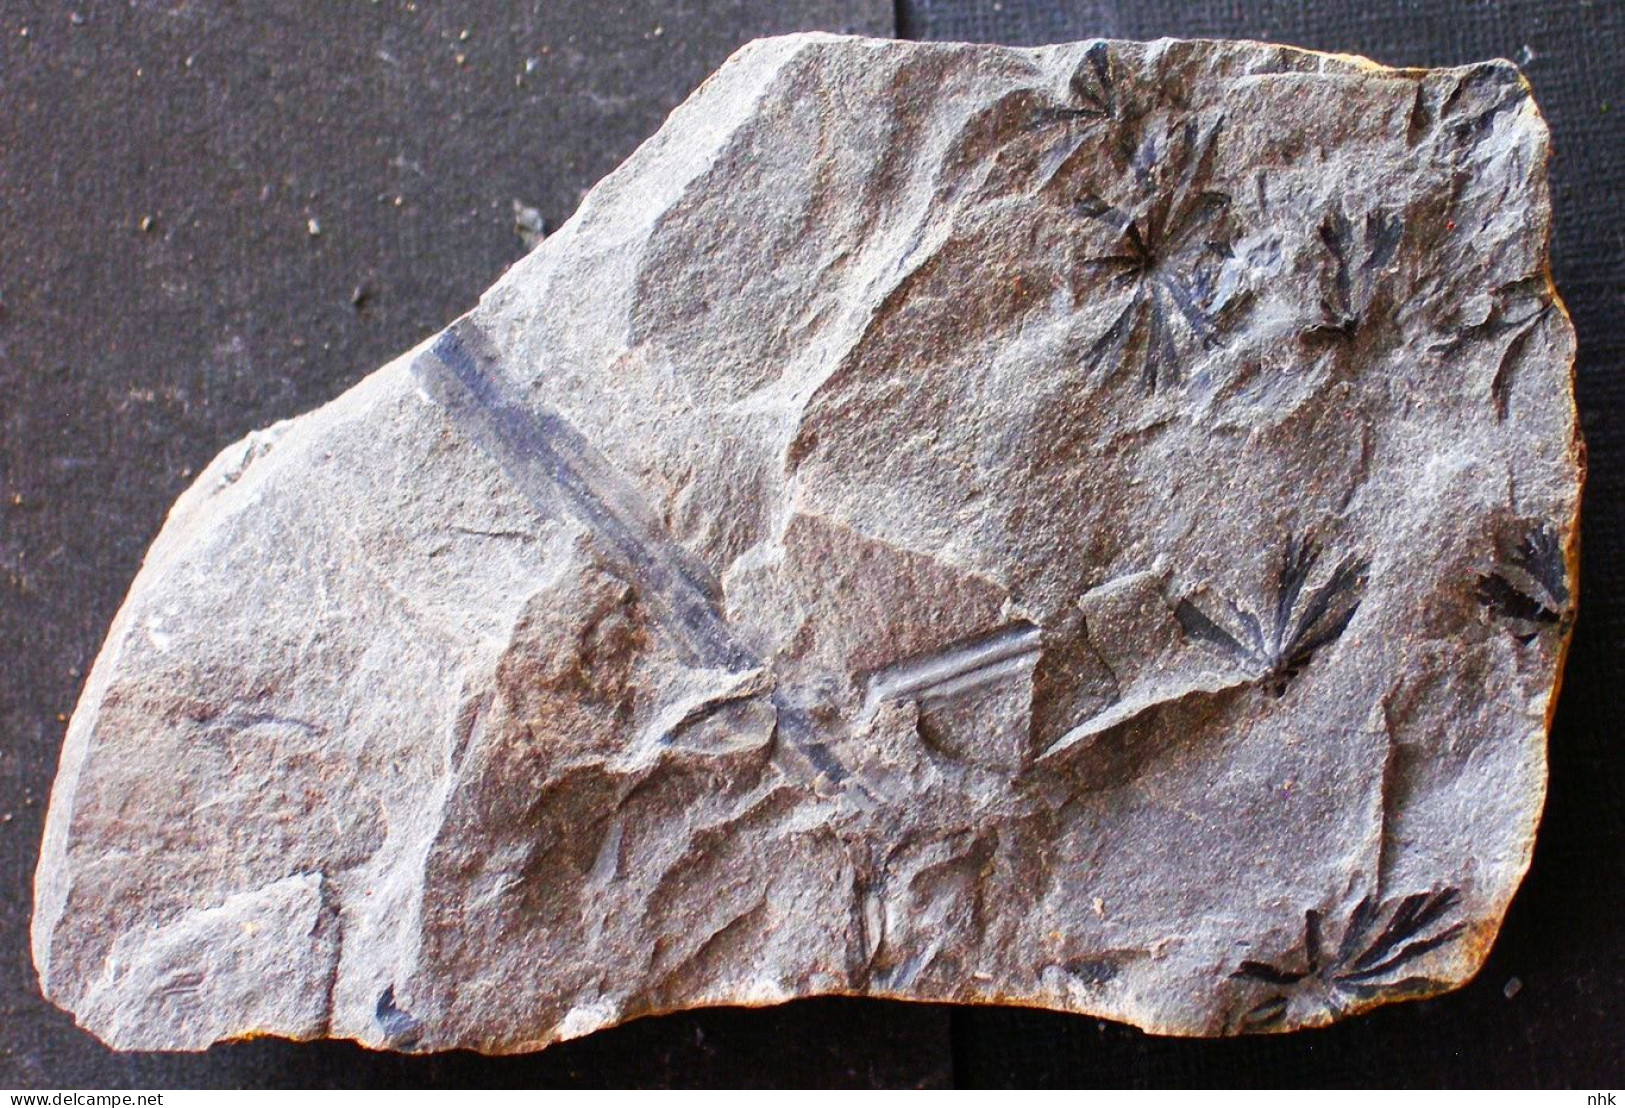 9680 9+  Neuropteris Tenuifolia Plante Du Carbonifère Carboniferous Plant - Fossilien